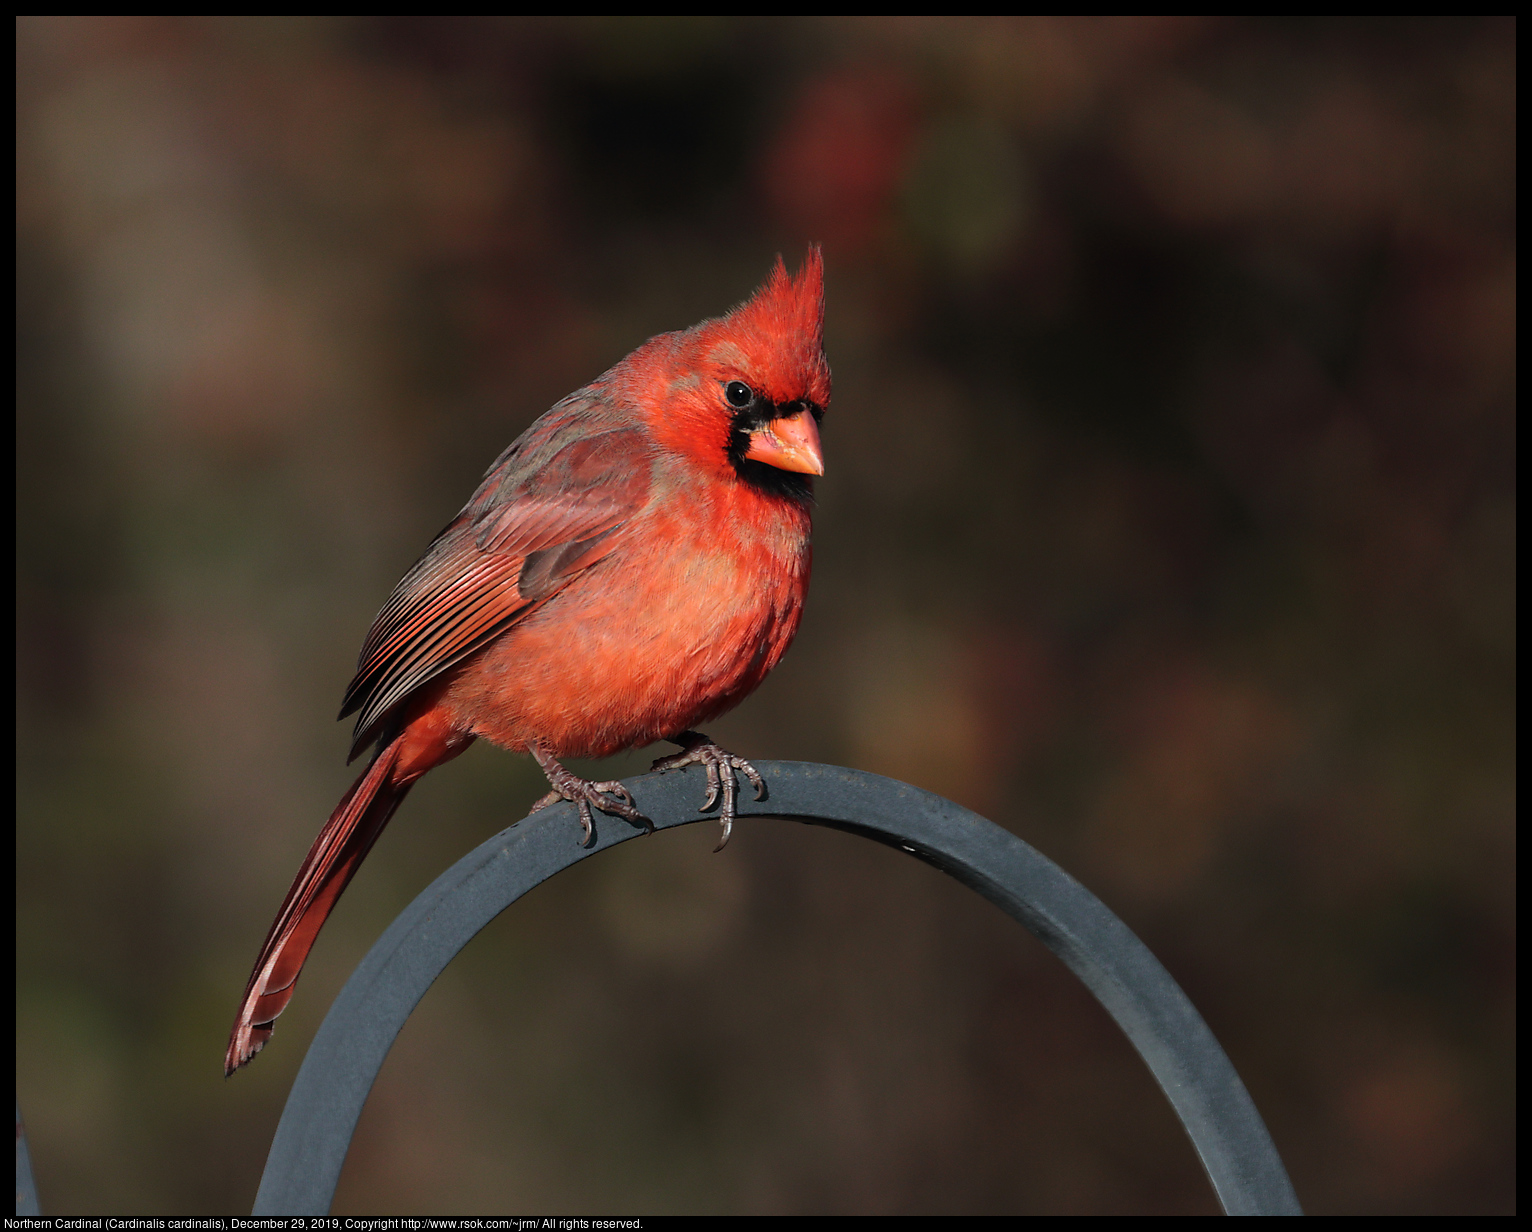 Northern Cardinal (Cardinalis cardinalis), December 29, 2019